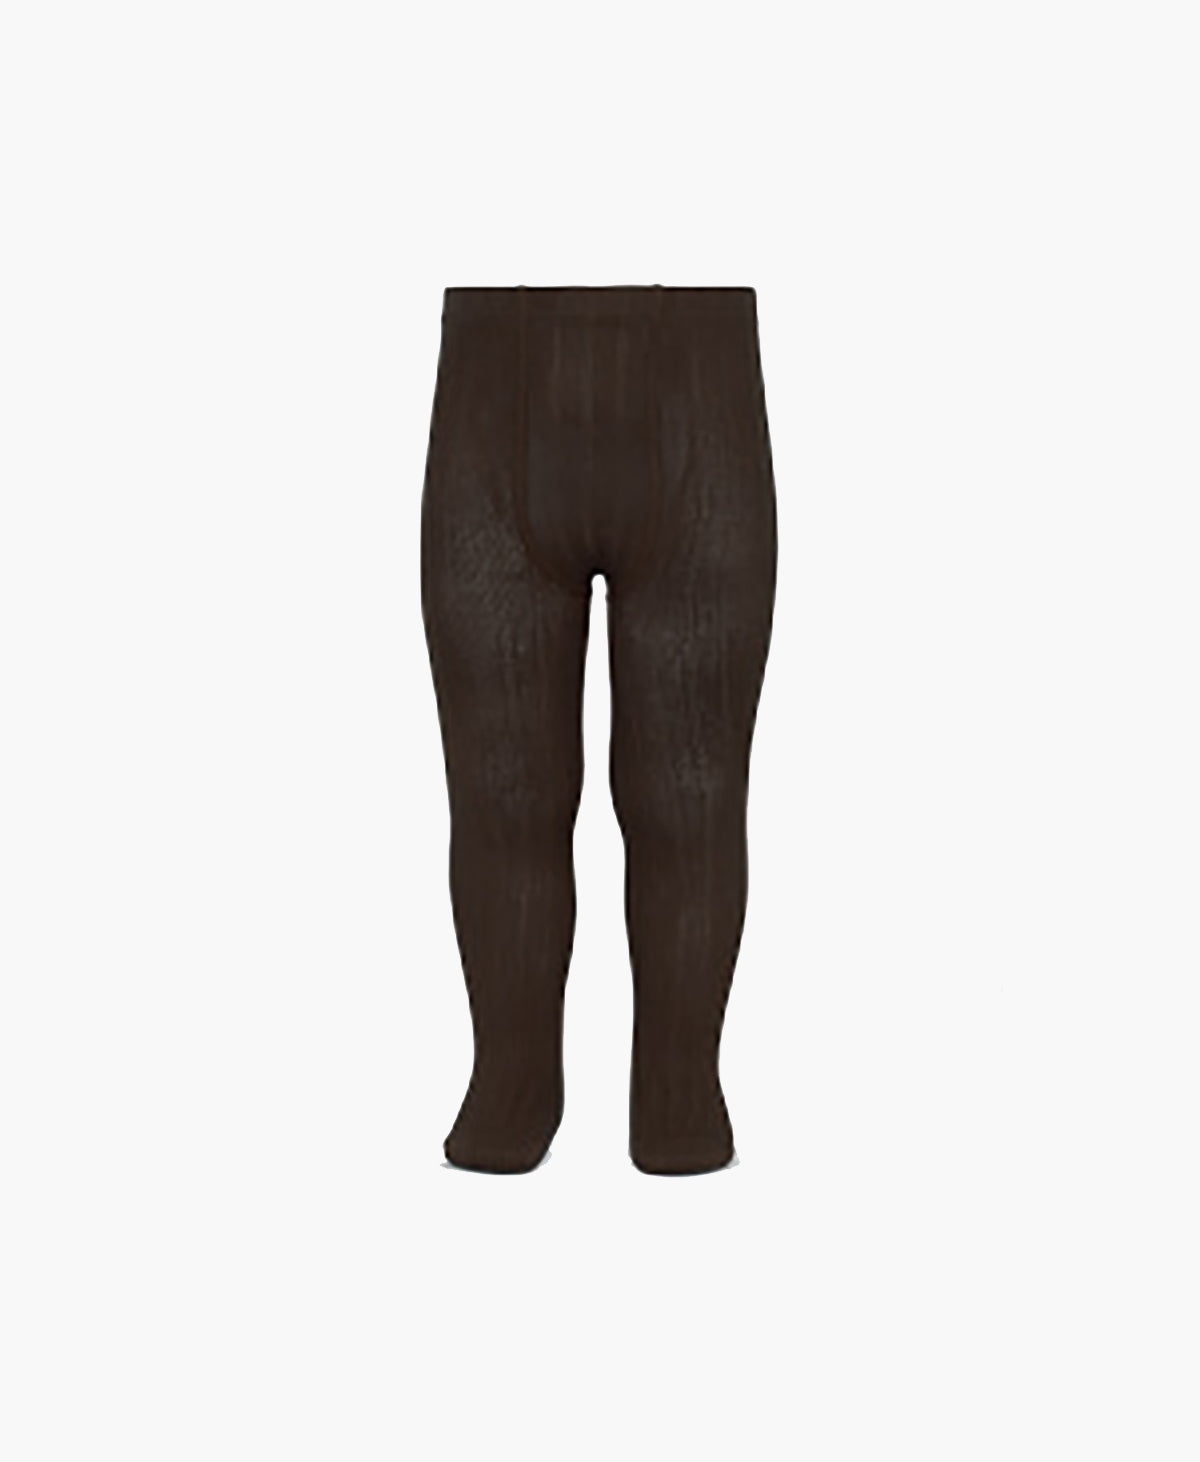 Cóndor - Cotton rib tights - 390 / Dark Brown